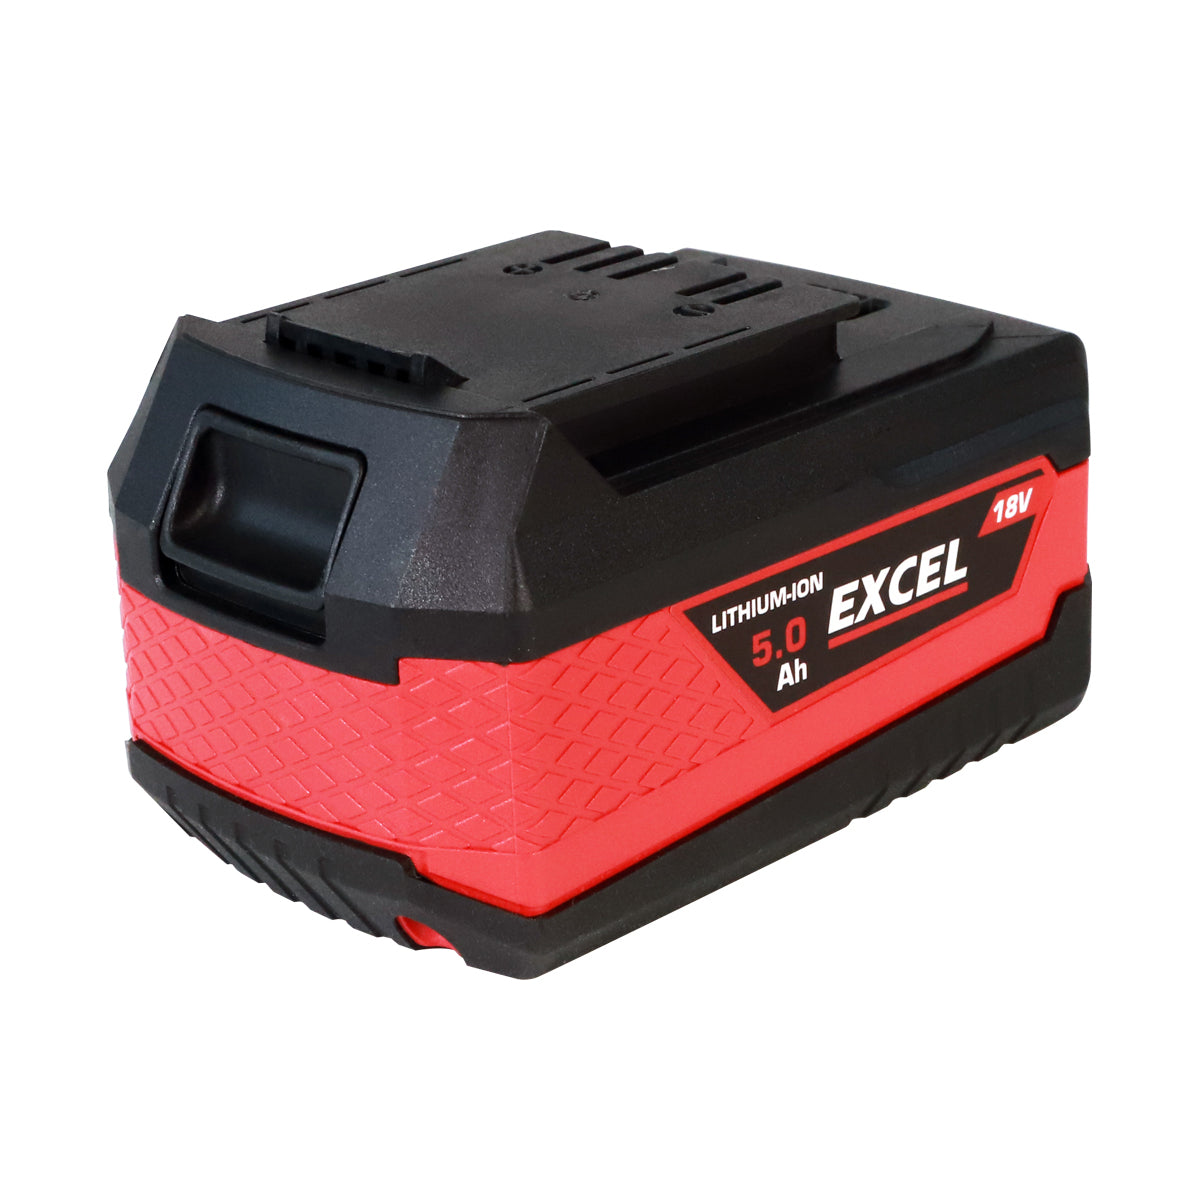 Excel 18V Grass Trimmer & Leaf Blower 2 x 5.0Ah Battery & Charger EXL14989